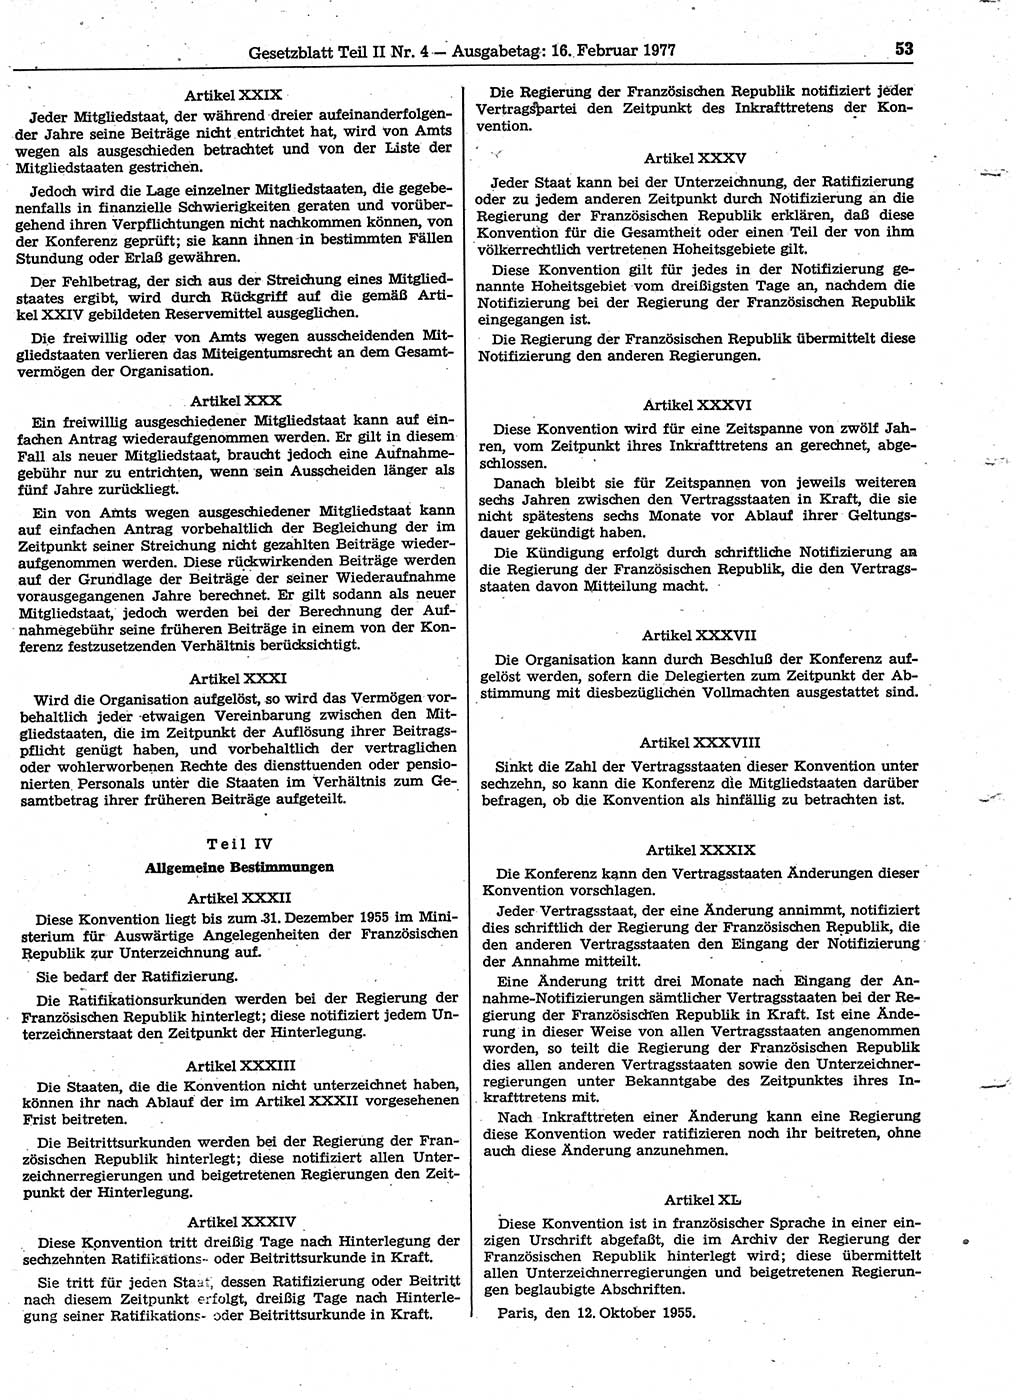 Gesetzblatt (GBl.) der Deutschen Demokratischen Republik (DDR) Teil ⅠⅠ 1977, Seite 53 (GBl. DDR ⅠⅠ 1977, S. 53)